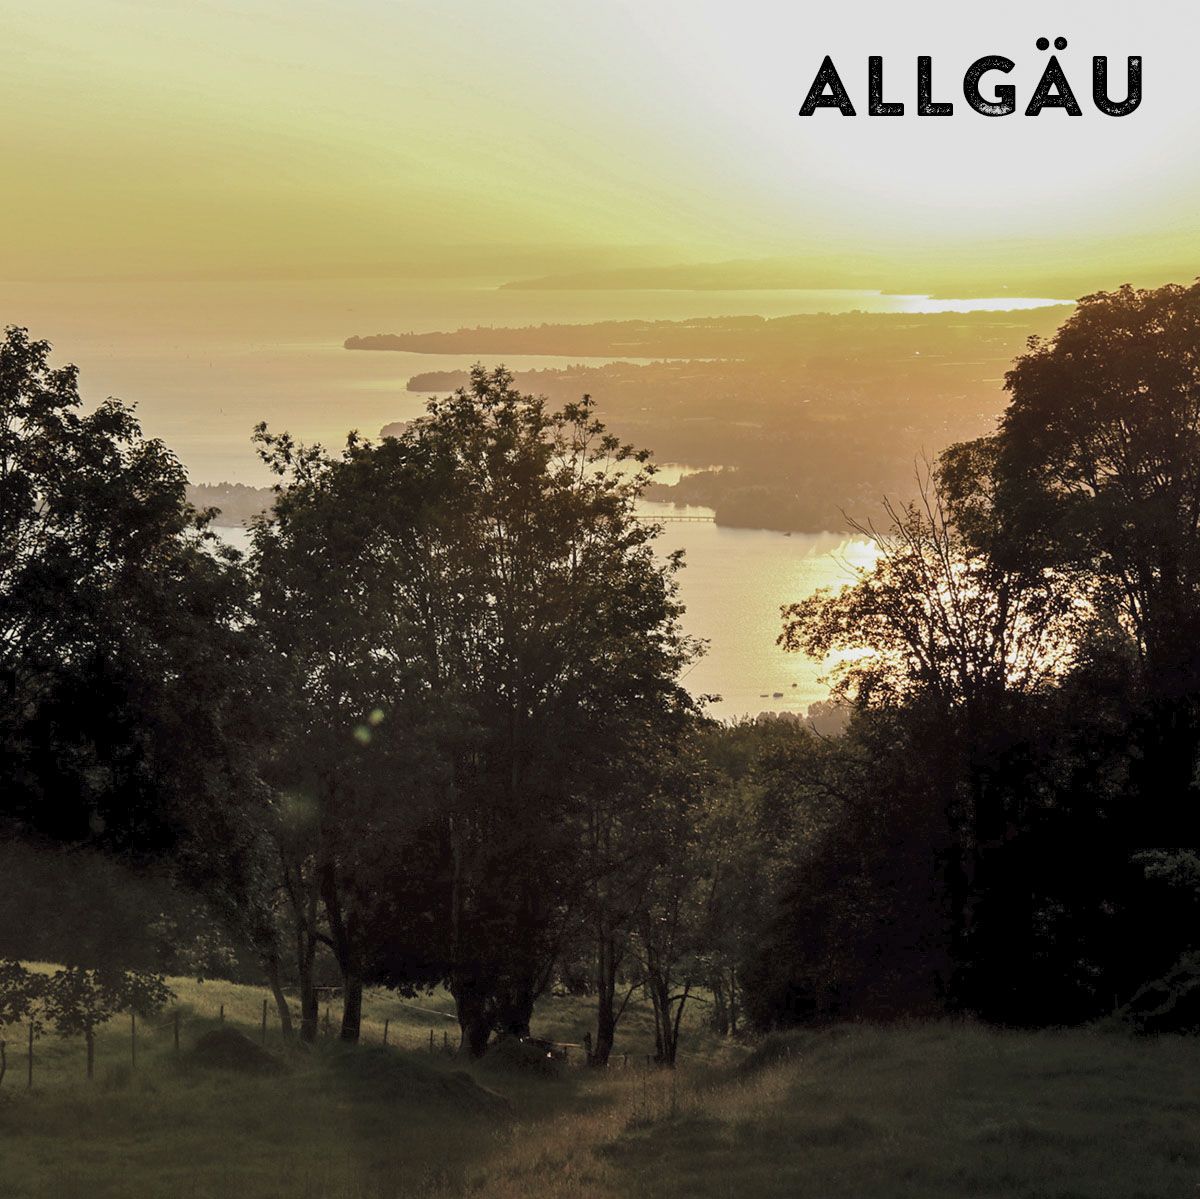 Abendstimmung mit einem bewaldeten Hügel und im Hintergrund der Bodensee sowie der Schriftzug "Allgäu"